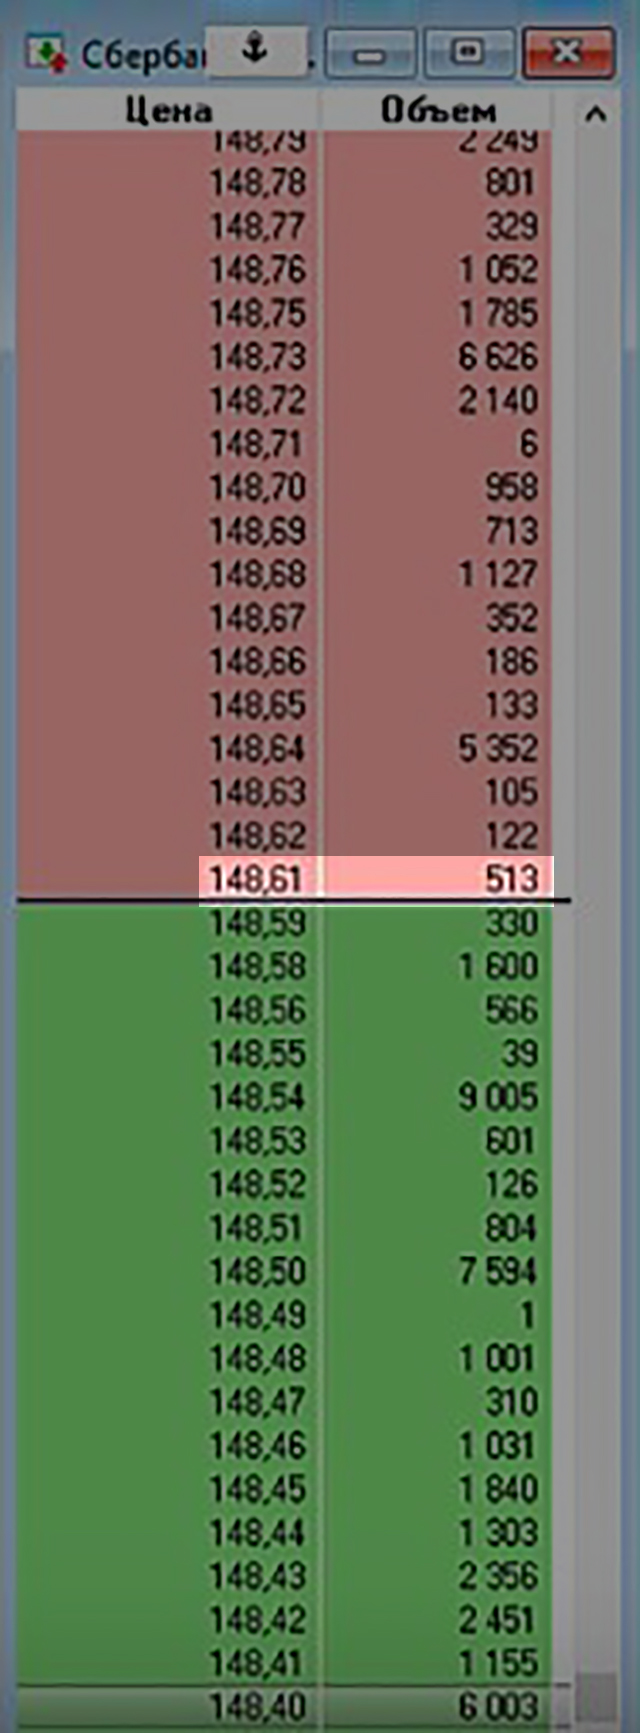 Стакан акций Сбербанка с заявками на покупку (зеленый) и на продажу (красный). Я могу купить по 148,61 ₽ только 513 акций. Если захочу купить больше прямо сейчас, то они обойдутся мне дороже